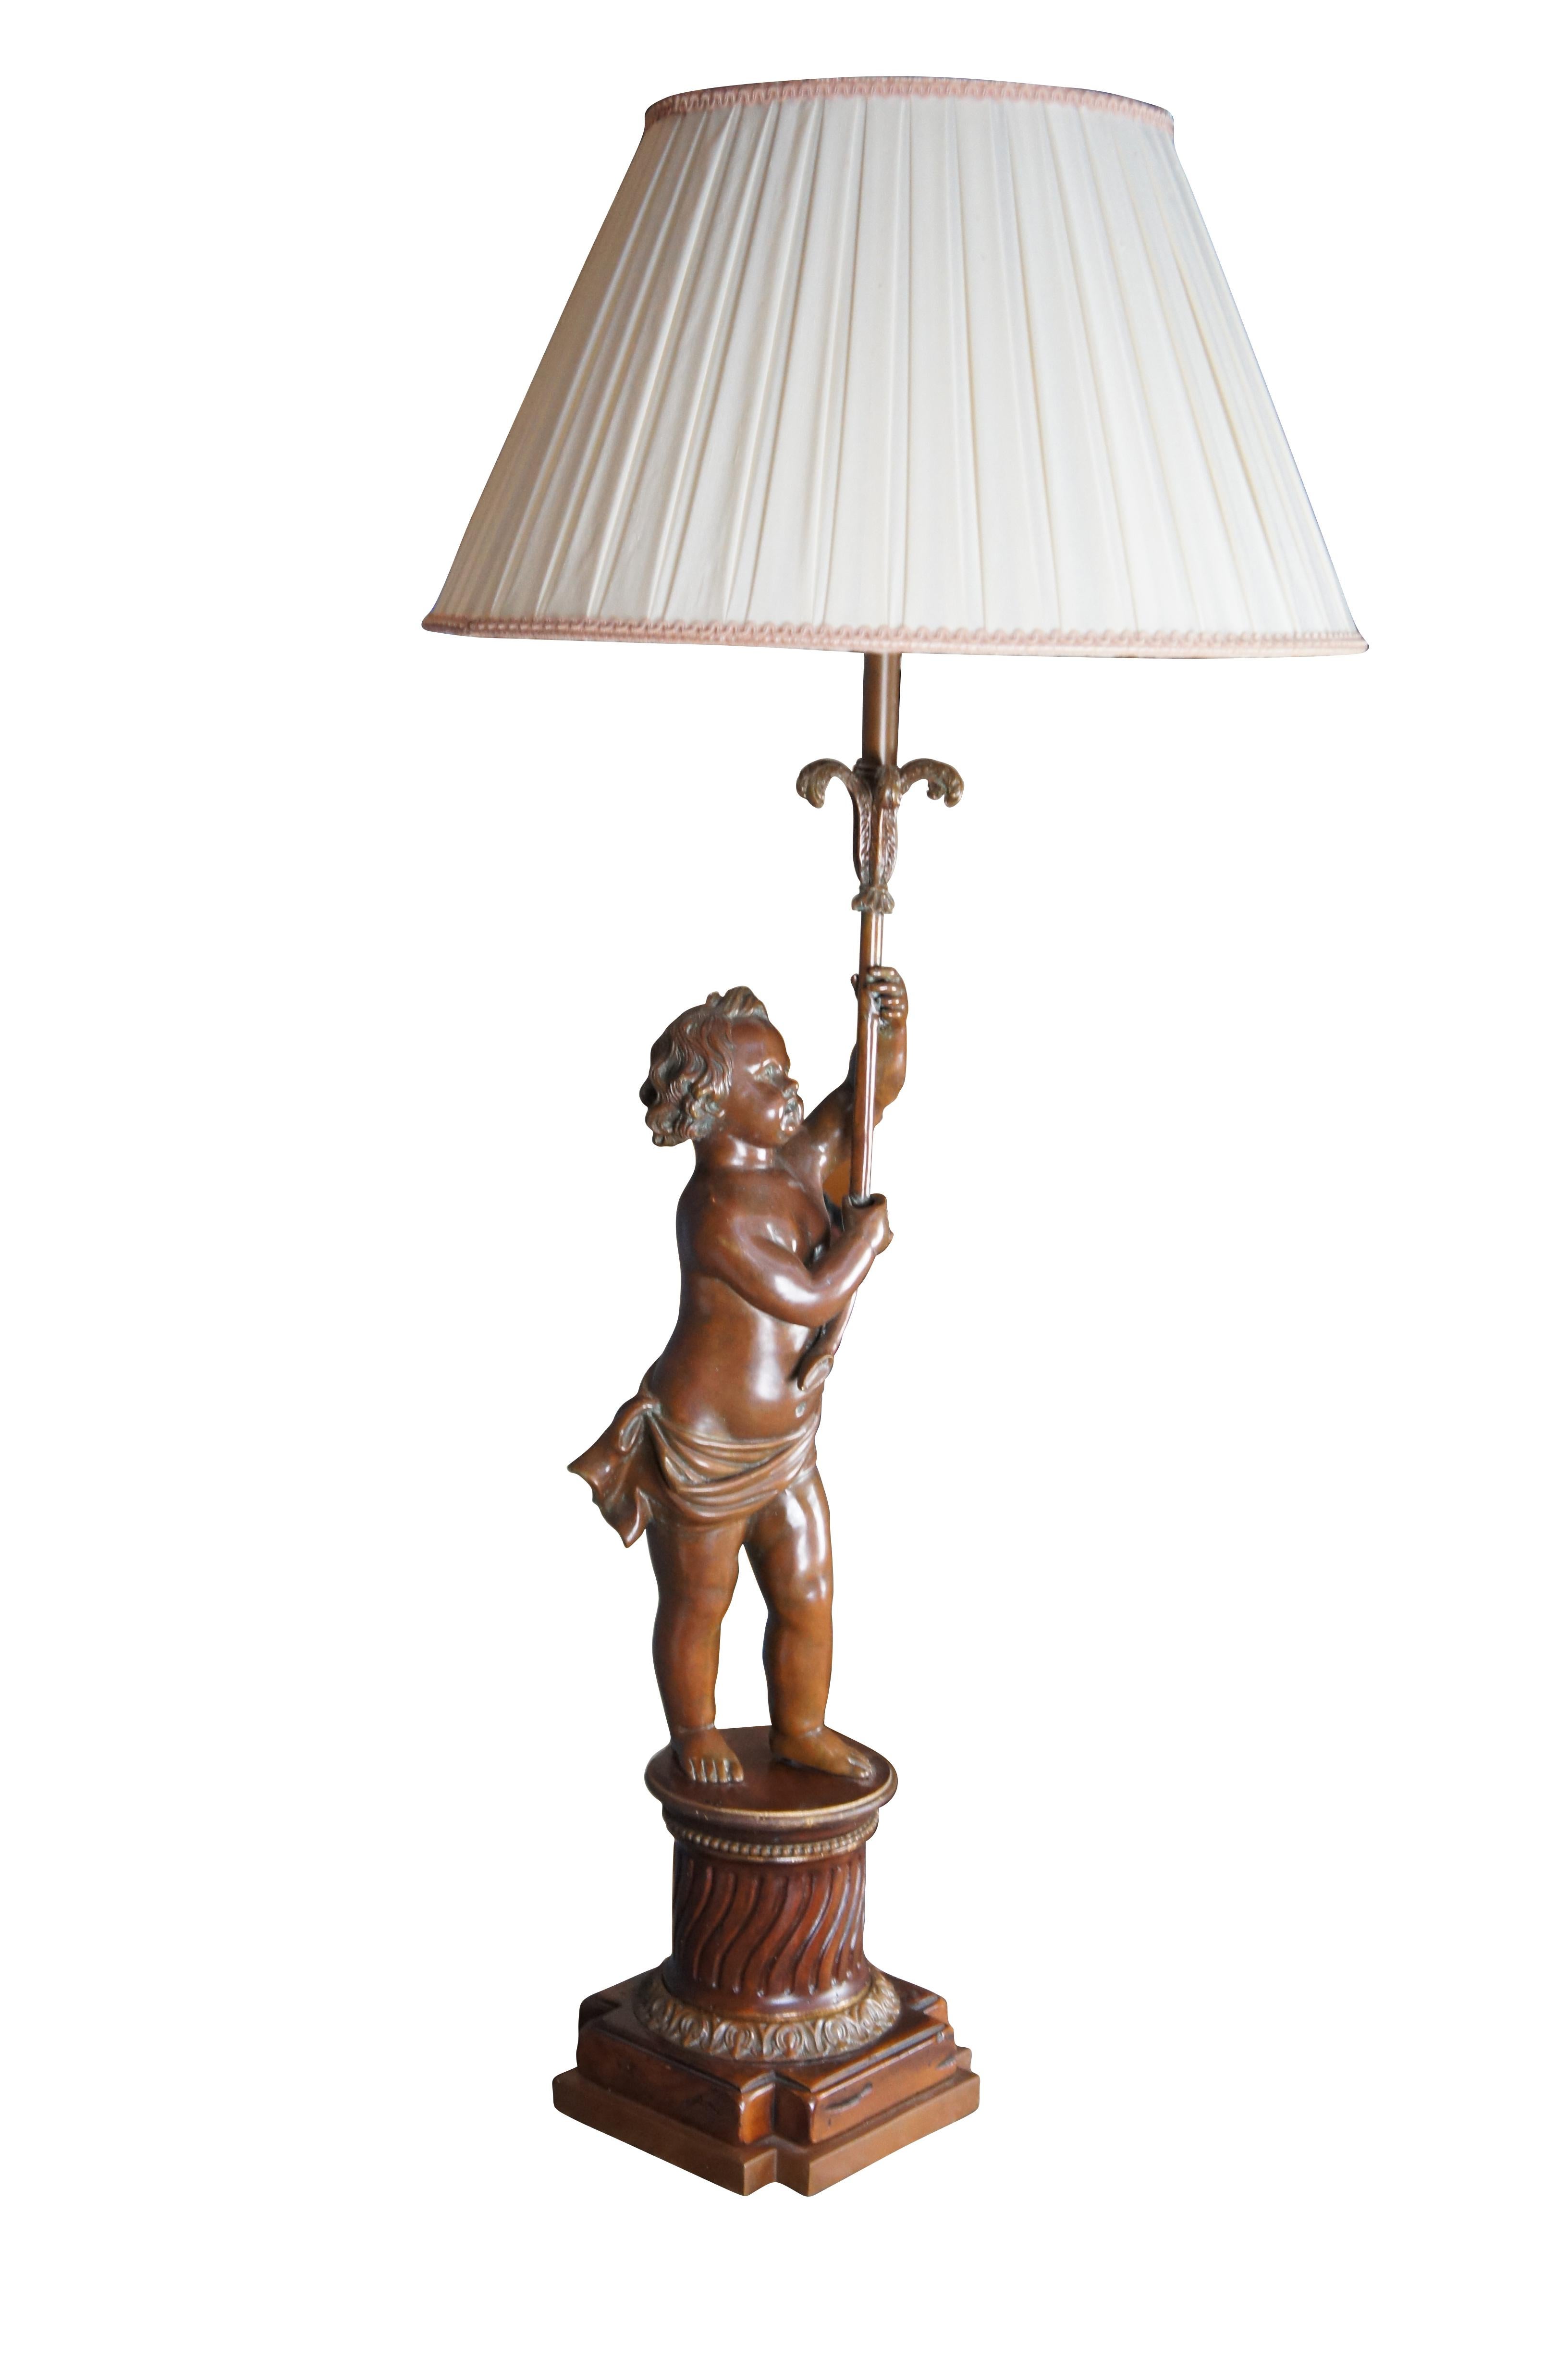 Une belle lampe française de style Art nouveau, vers la fin du 20e siècle. Un chérubin en bronze tient un chandelier de style Prince des Baleines sur une base en acajou sculpté. La base est un piédestal ou un support de style grec avec des perles,